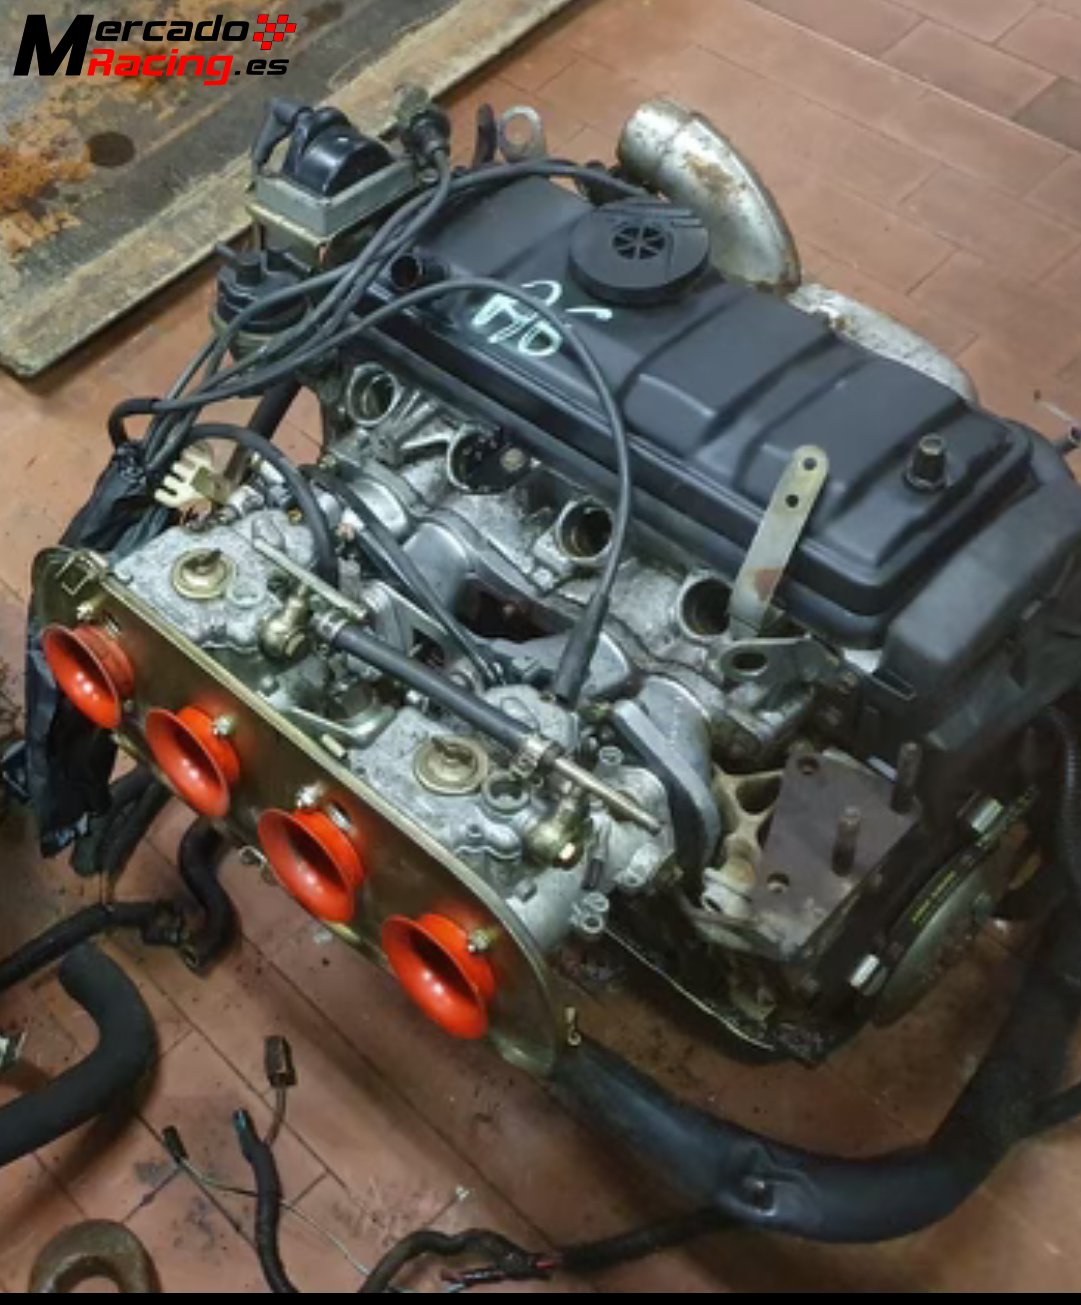 Peugeot 205 rallye motor original